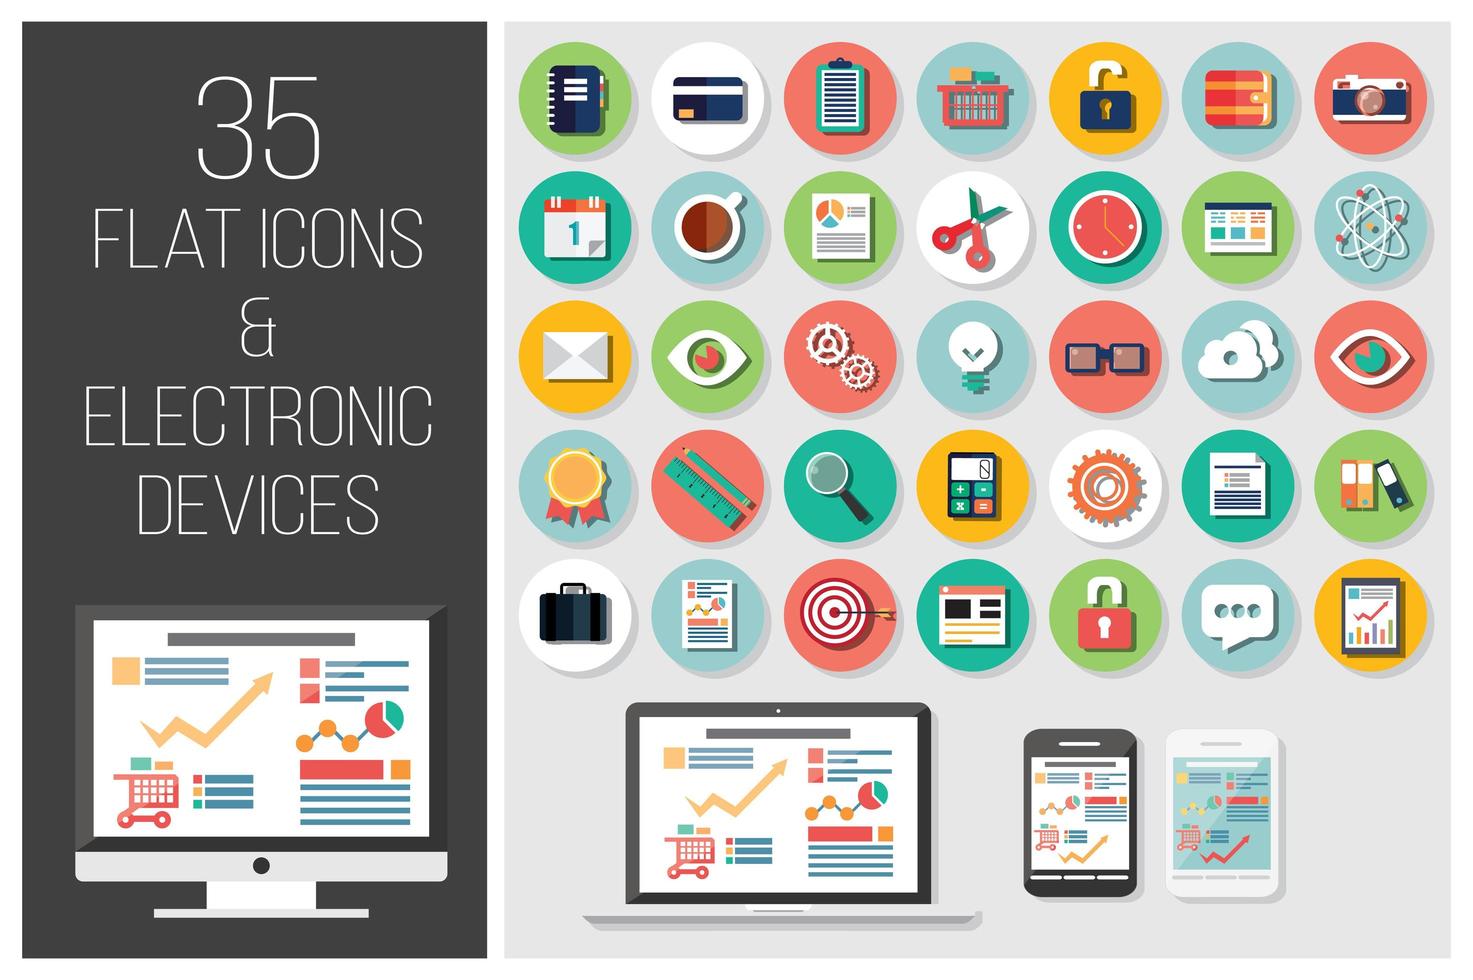 35 iconos web planos y 4 dispositivos electrónicos vector